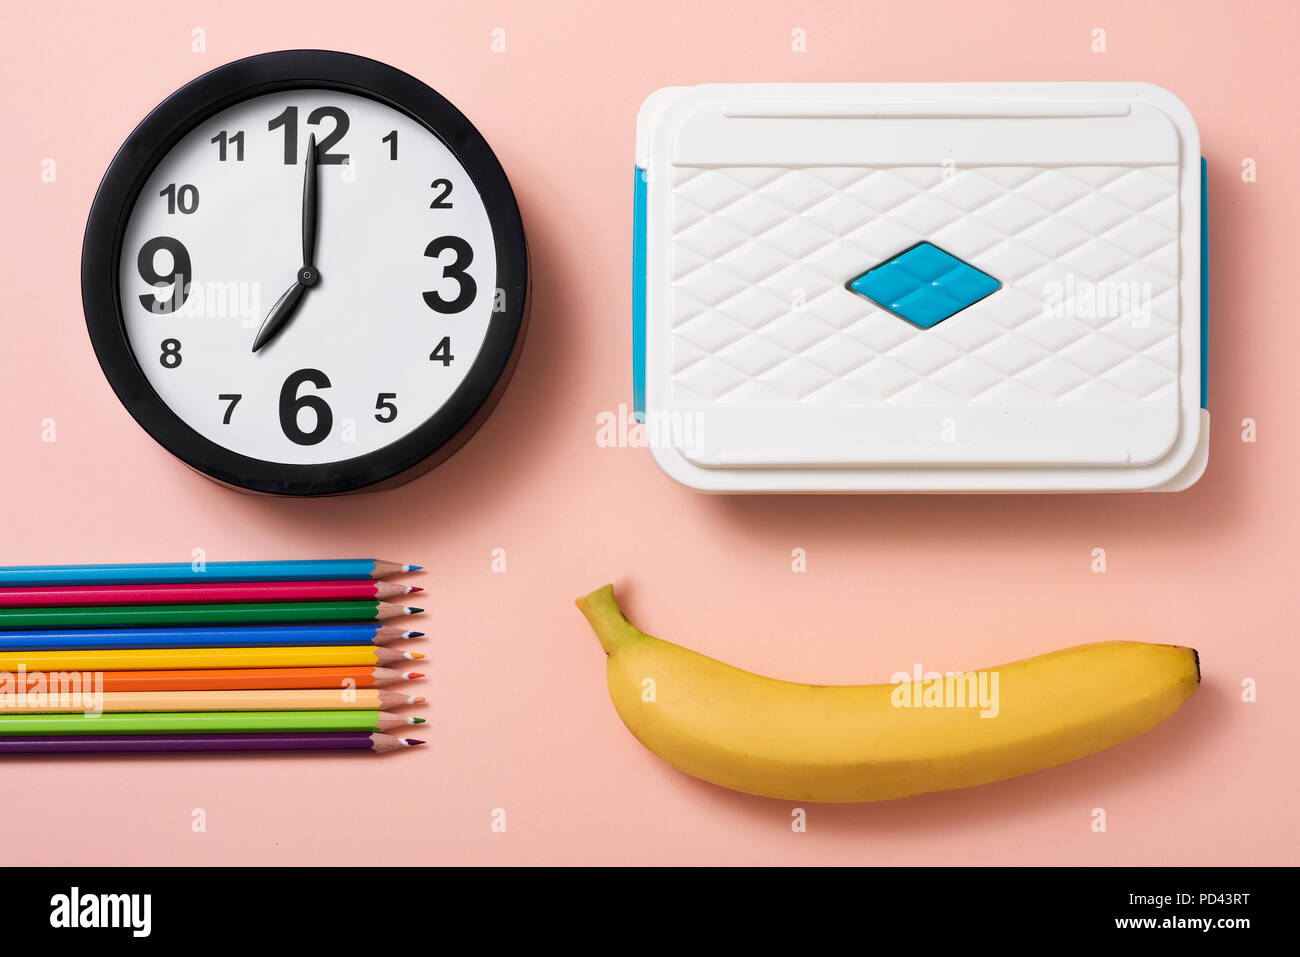 Portrait d'un réveil à sept heures, certains des crayons de couleurs différentes, une banane et un lunch box sur un fond rose saumon Banque D'Images